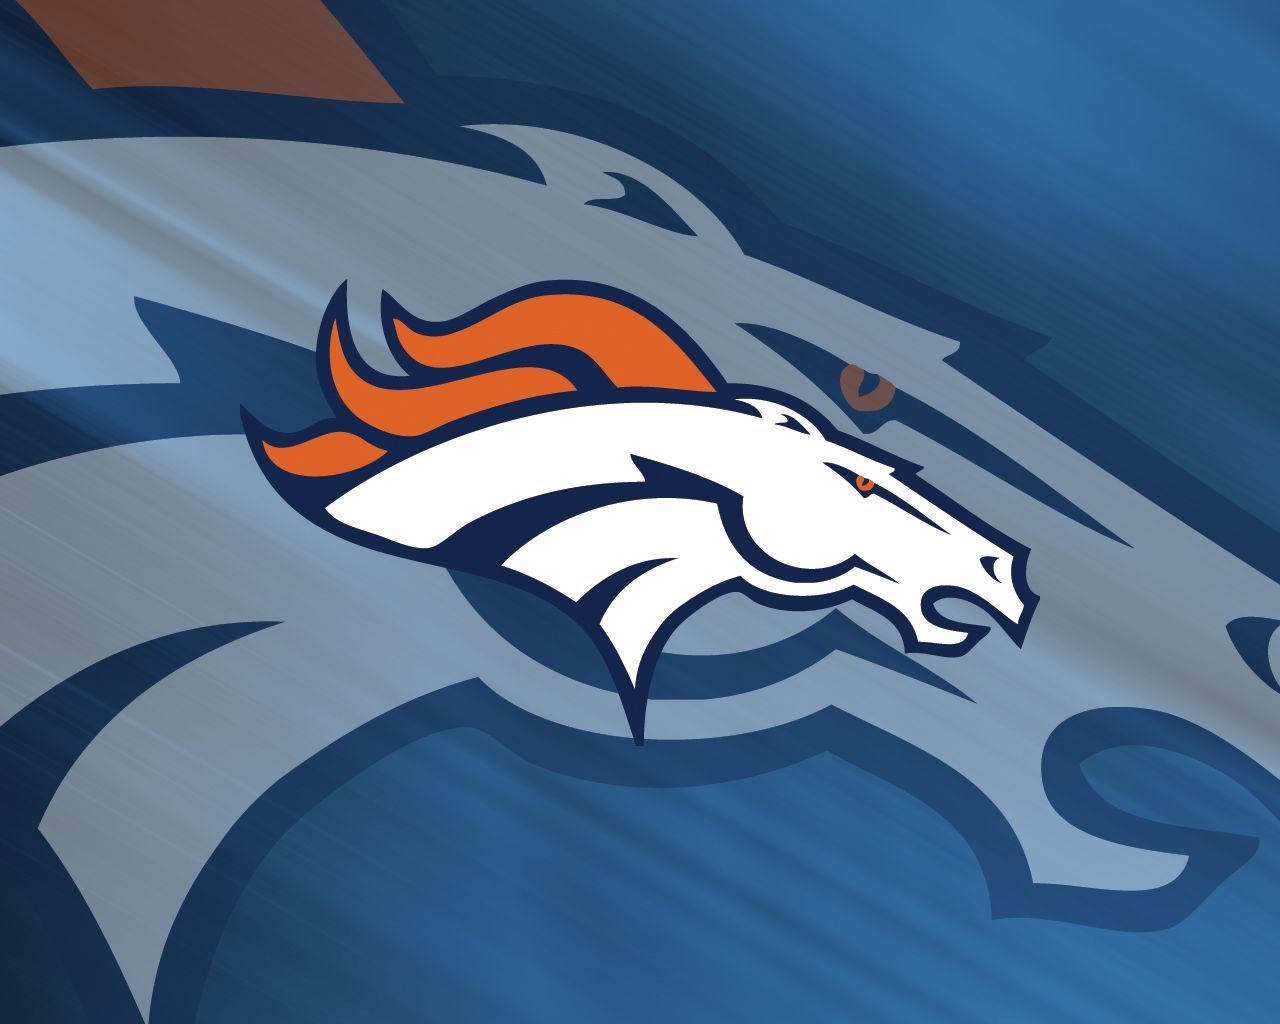 Marvelous Denver Broncos Nfl id: 2159 - 7HDWallpapers